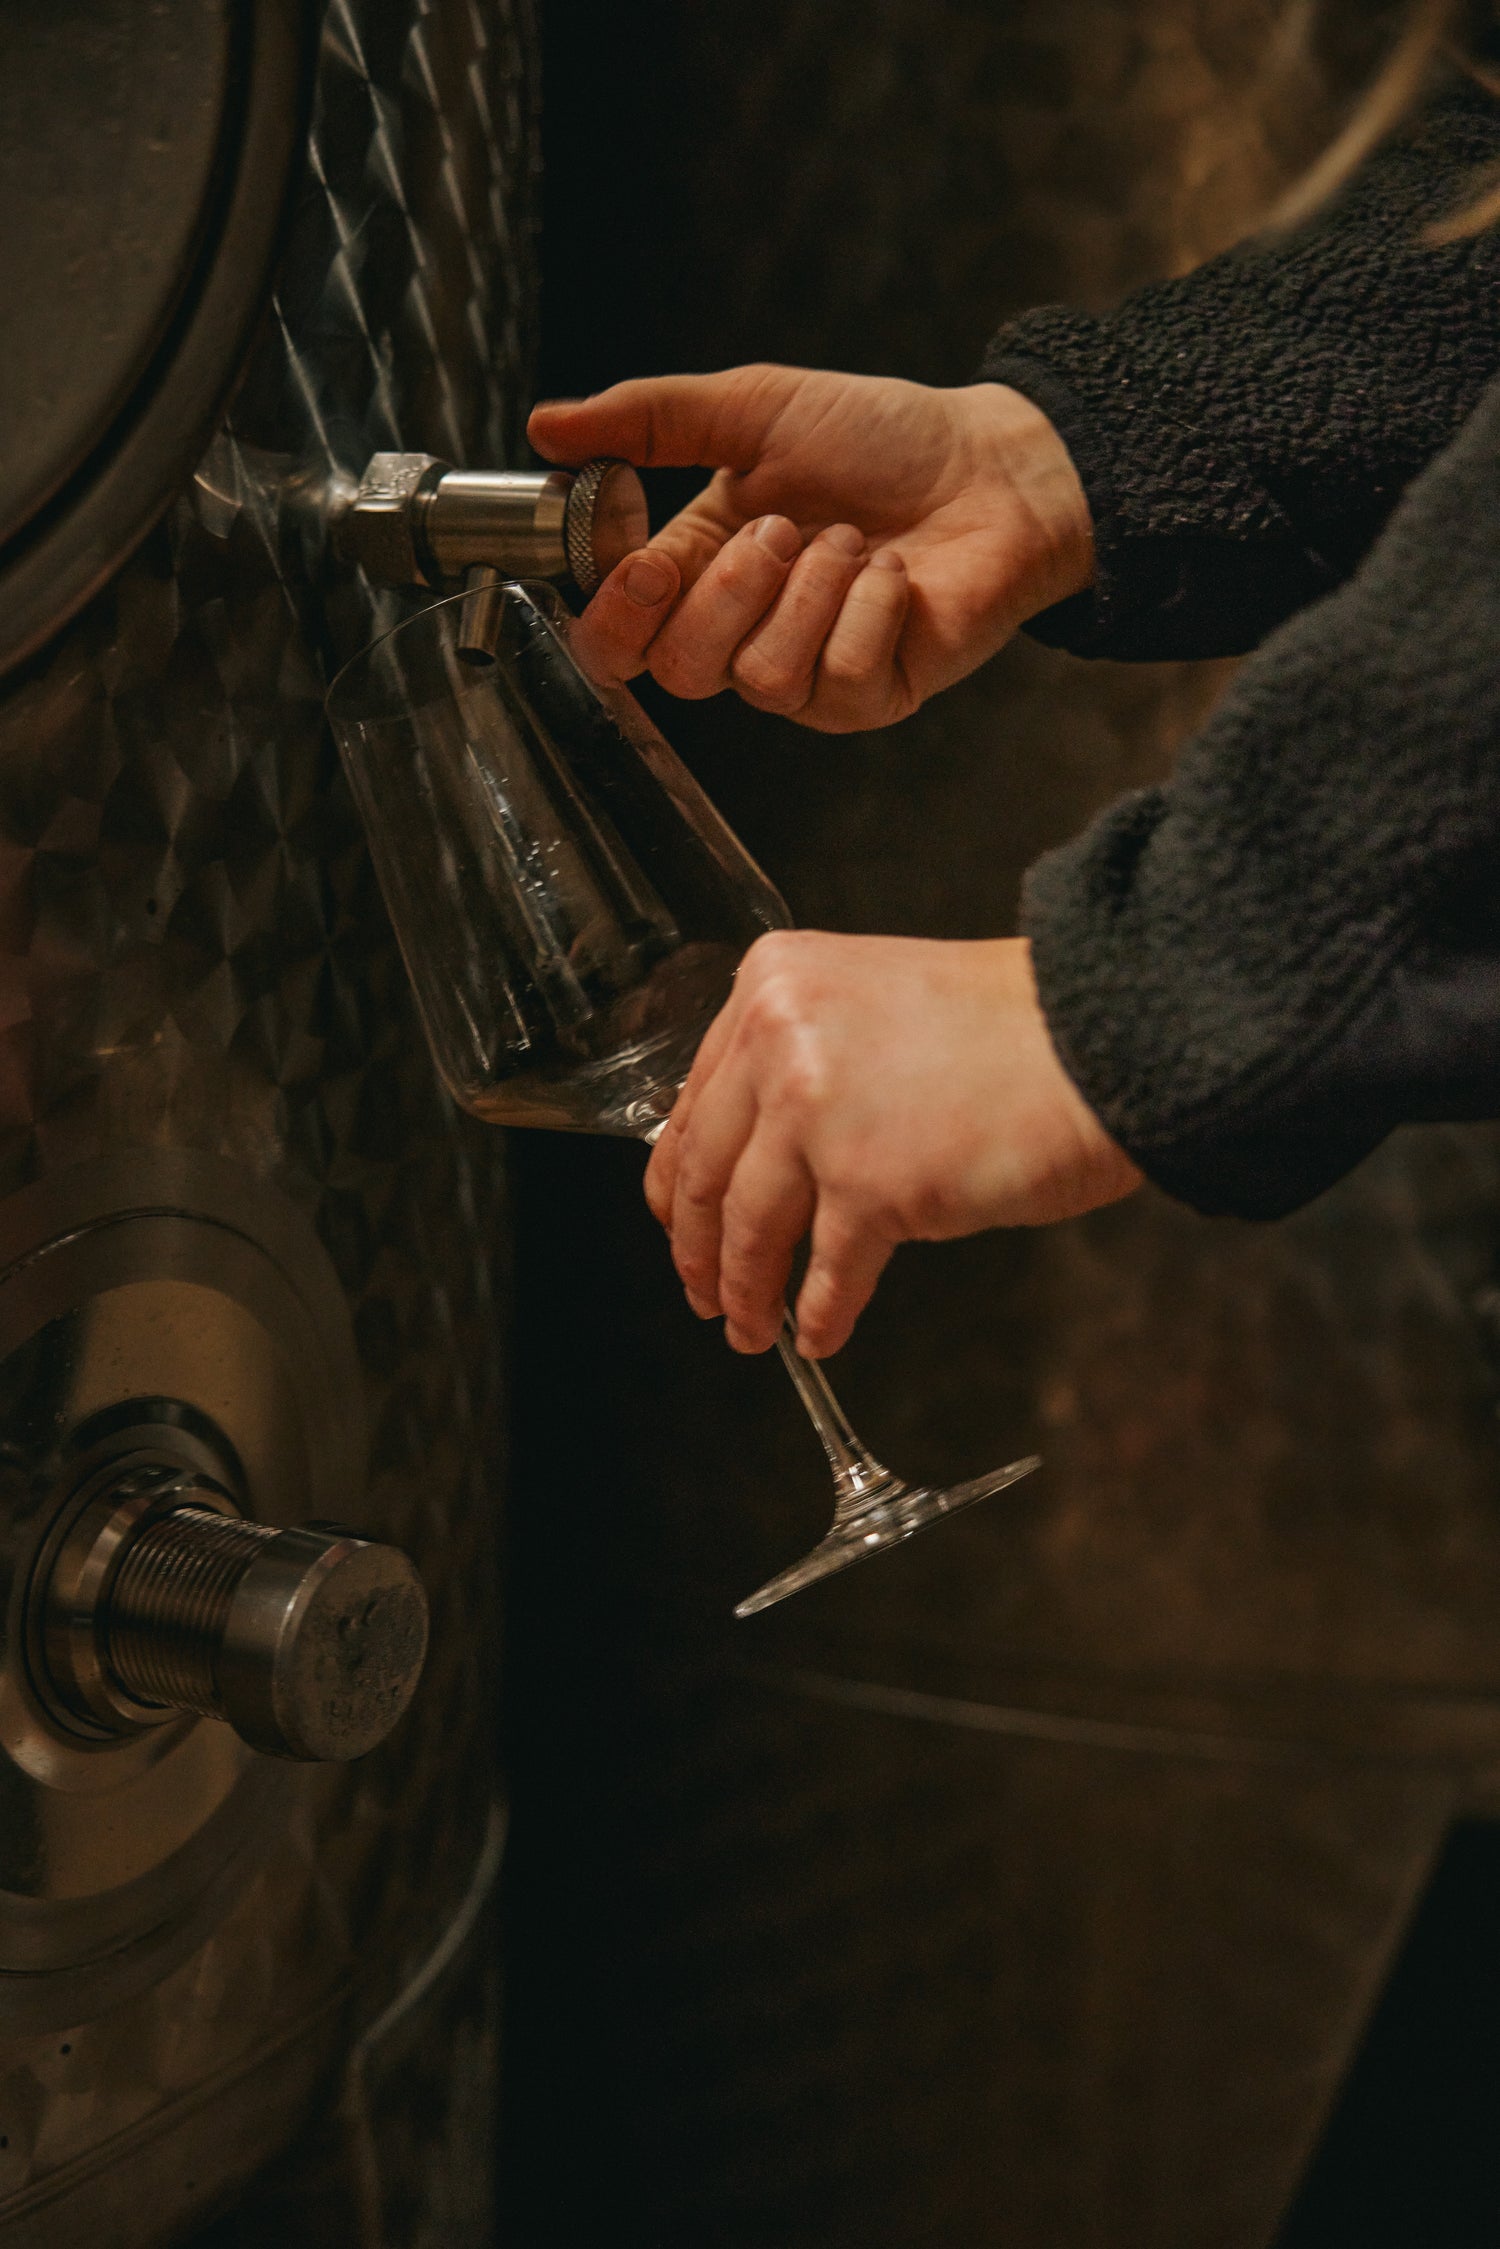 Ein Bildausschnitt von I AM NOT WINE Gründerin Franziska Treuer im Weinkeller. Sie hält mit der linken Hand ein Weinglas vor den Zapfhahn eines Weintanks. Mit der rechten Hand steuert sie den Zapfhahn, um etwas von dem Grundwein abzuzapfen.